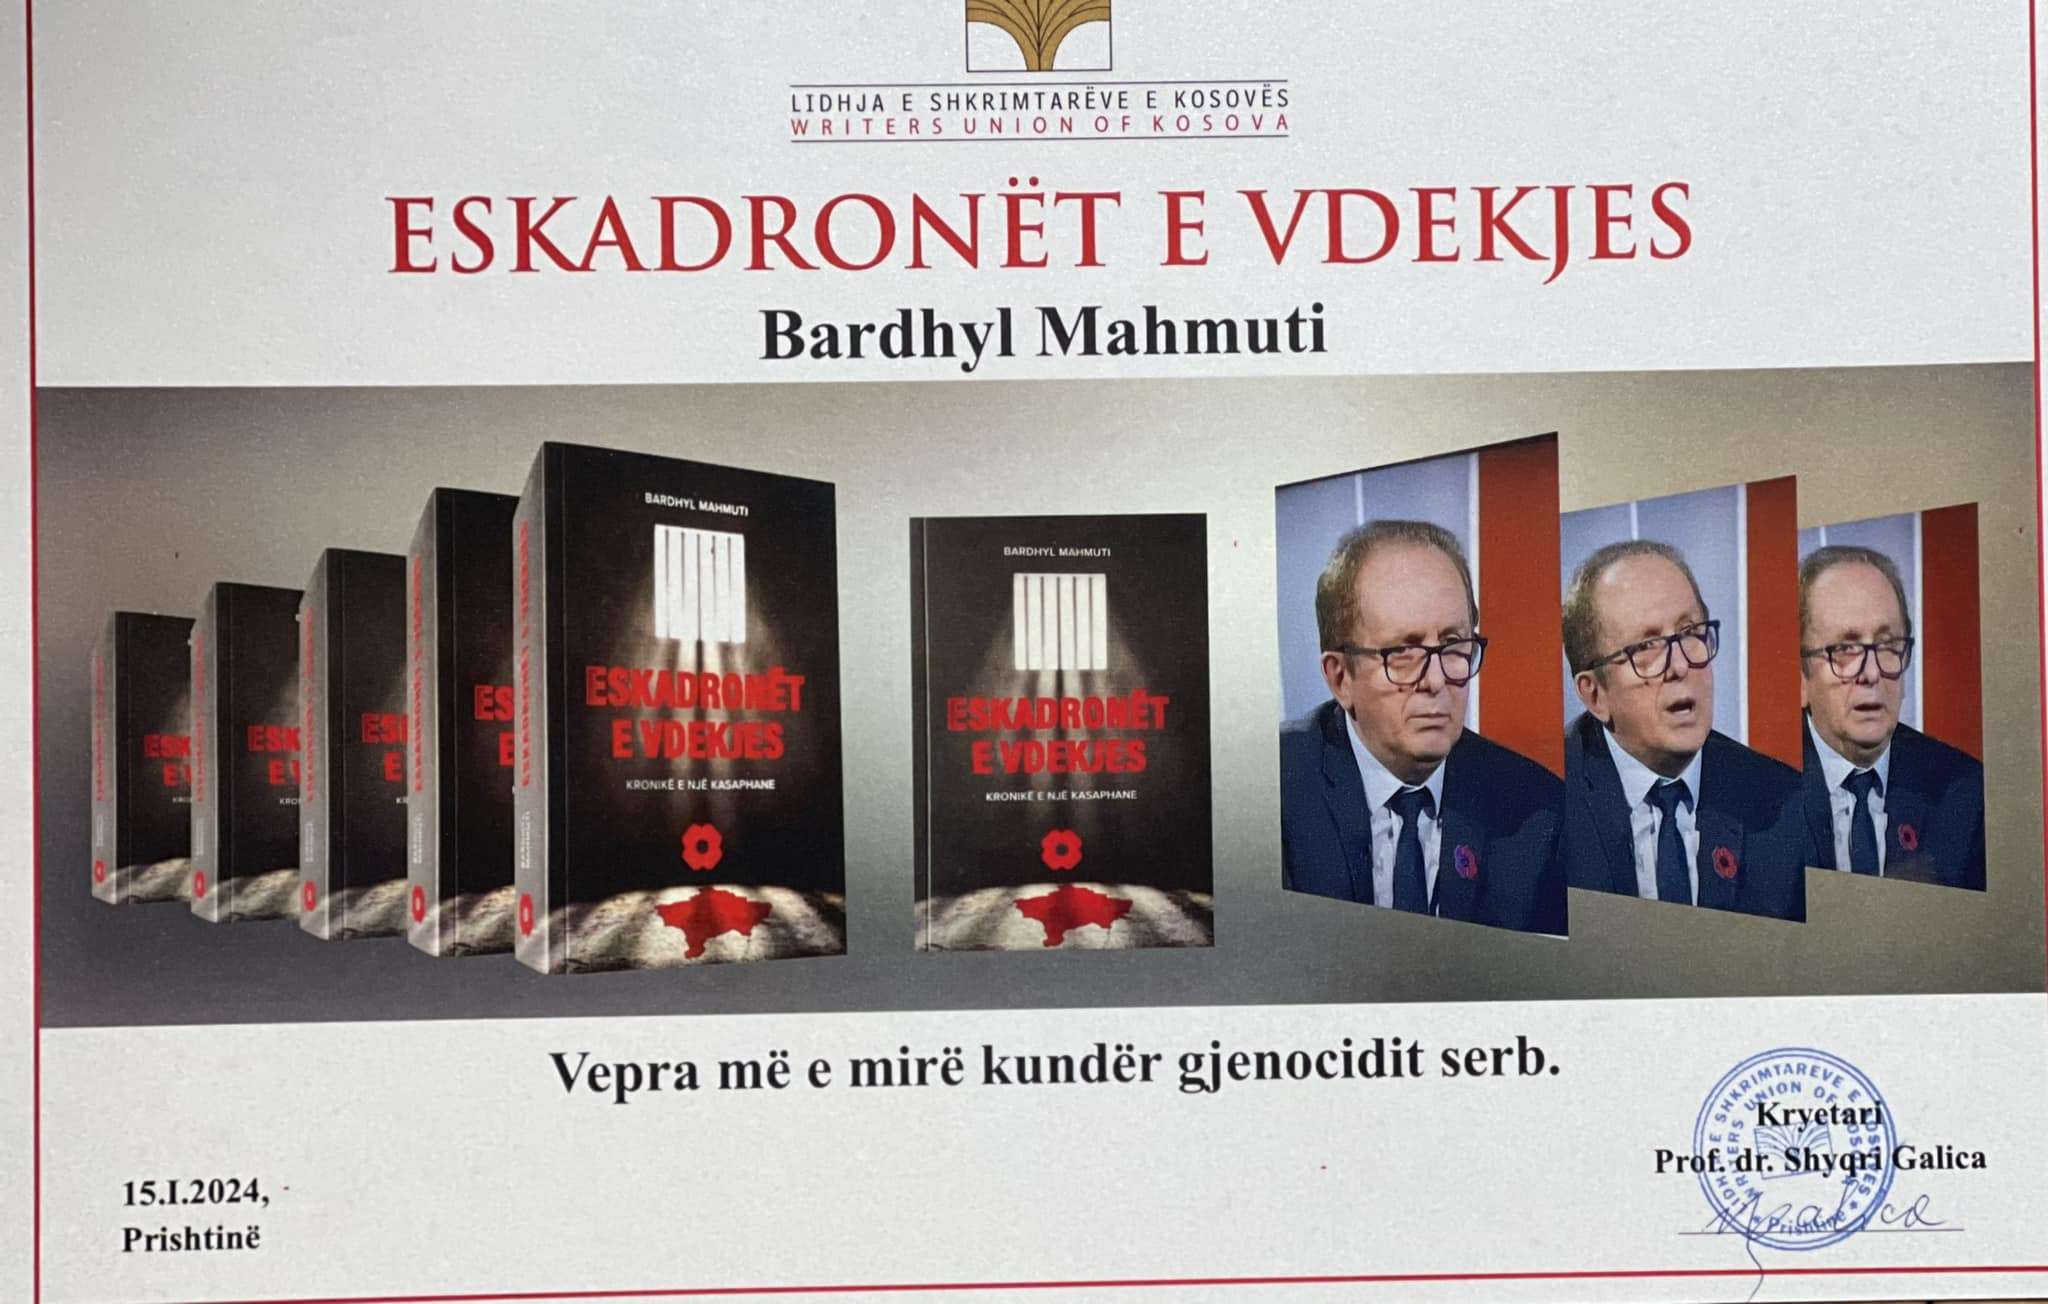 LSHK shpallë “ESKADRONËT E VDEKJES” të Bardhyl Mahmutit si roman më të mirë kundër genocidit serb